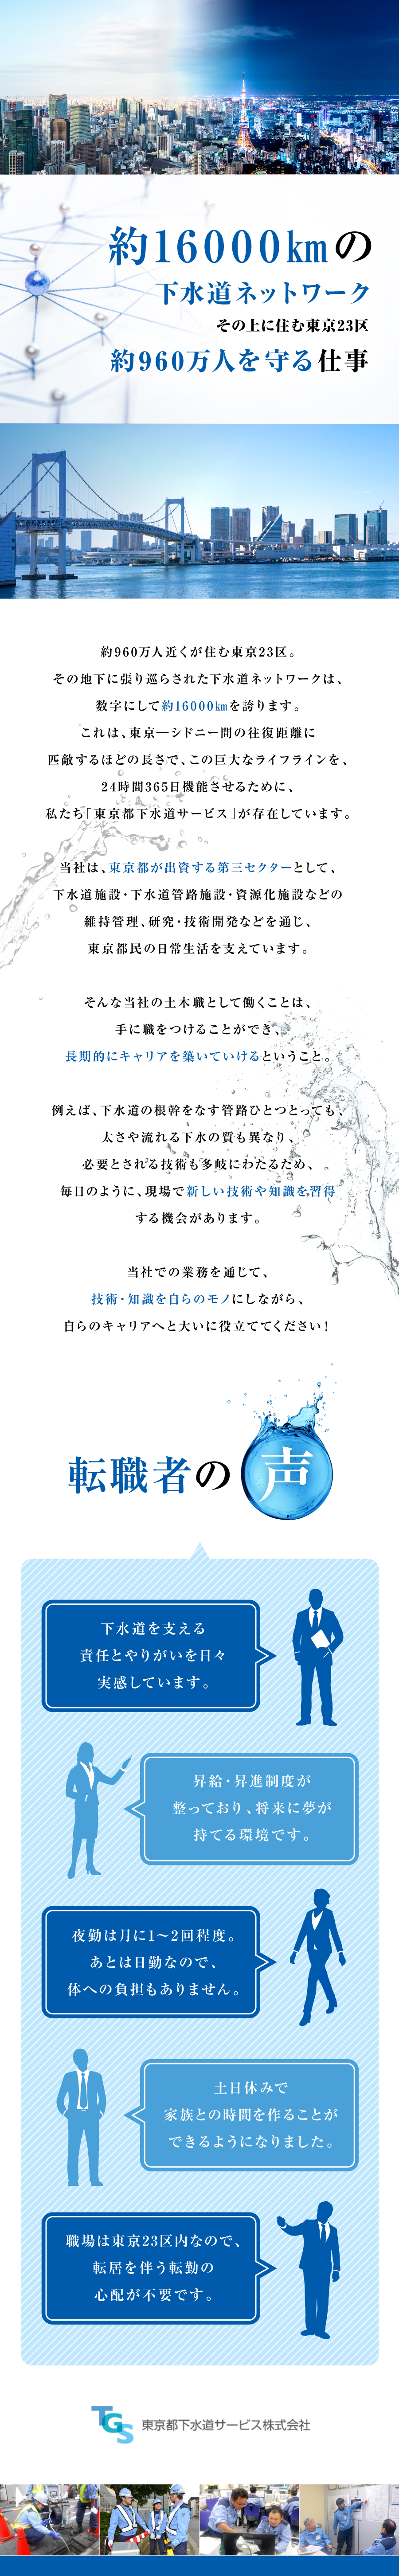 東京都下水道サービス株式会社からのメッセージ